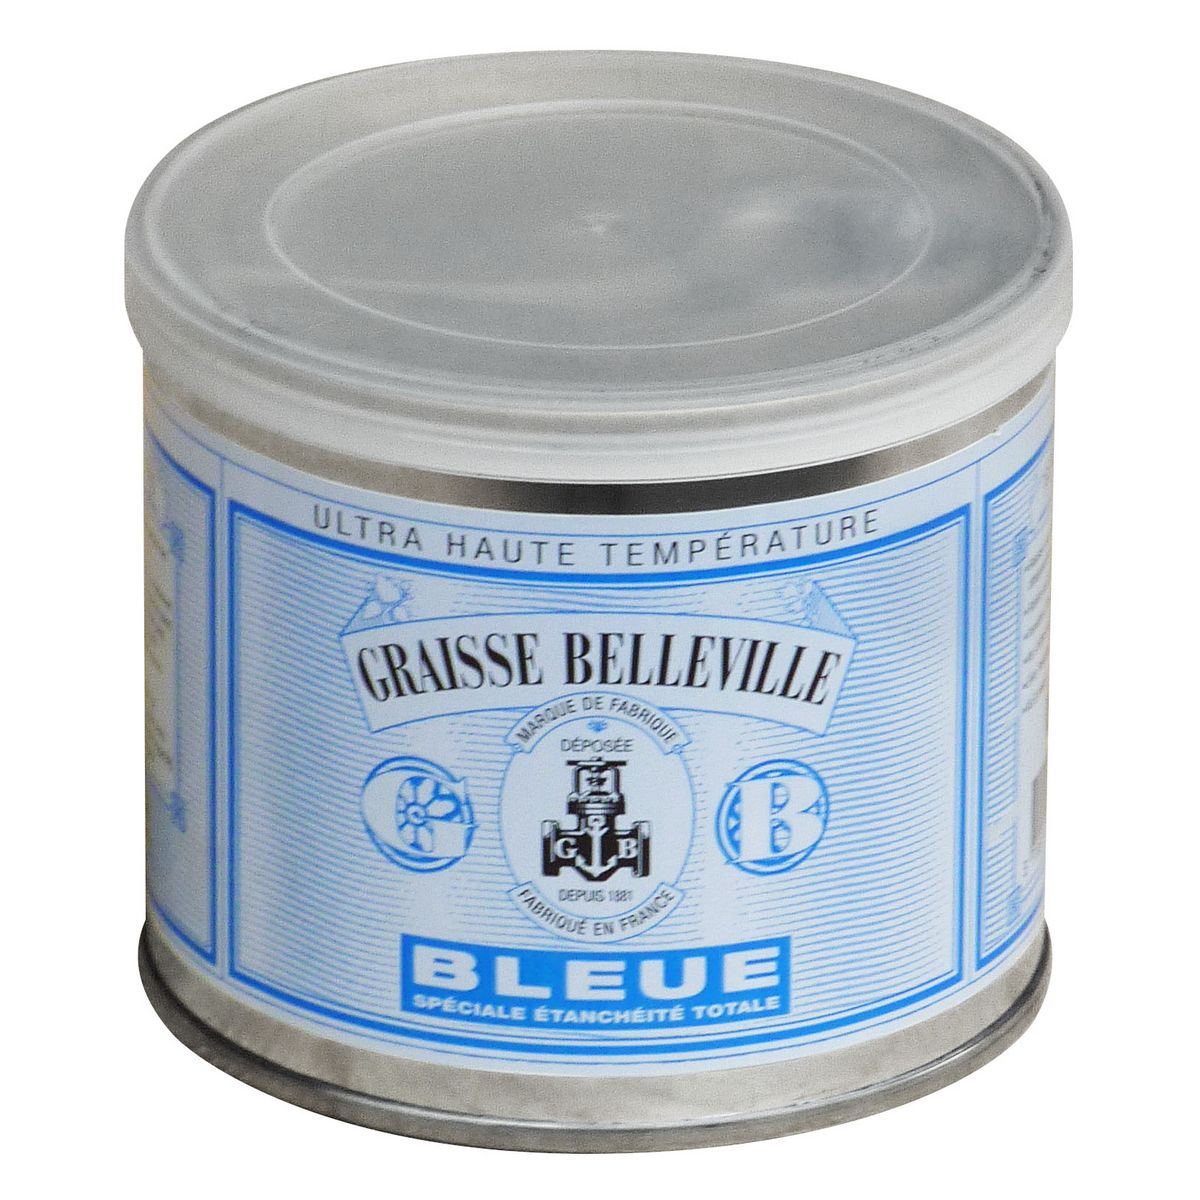 GRAISSE BELLEVILLE Graisse belleville bleu spécial étanchéité 500g